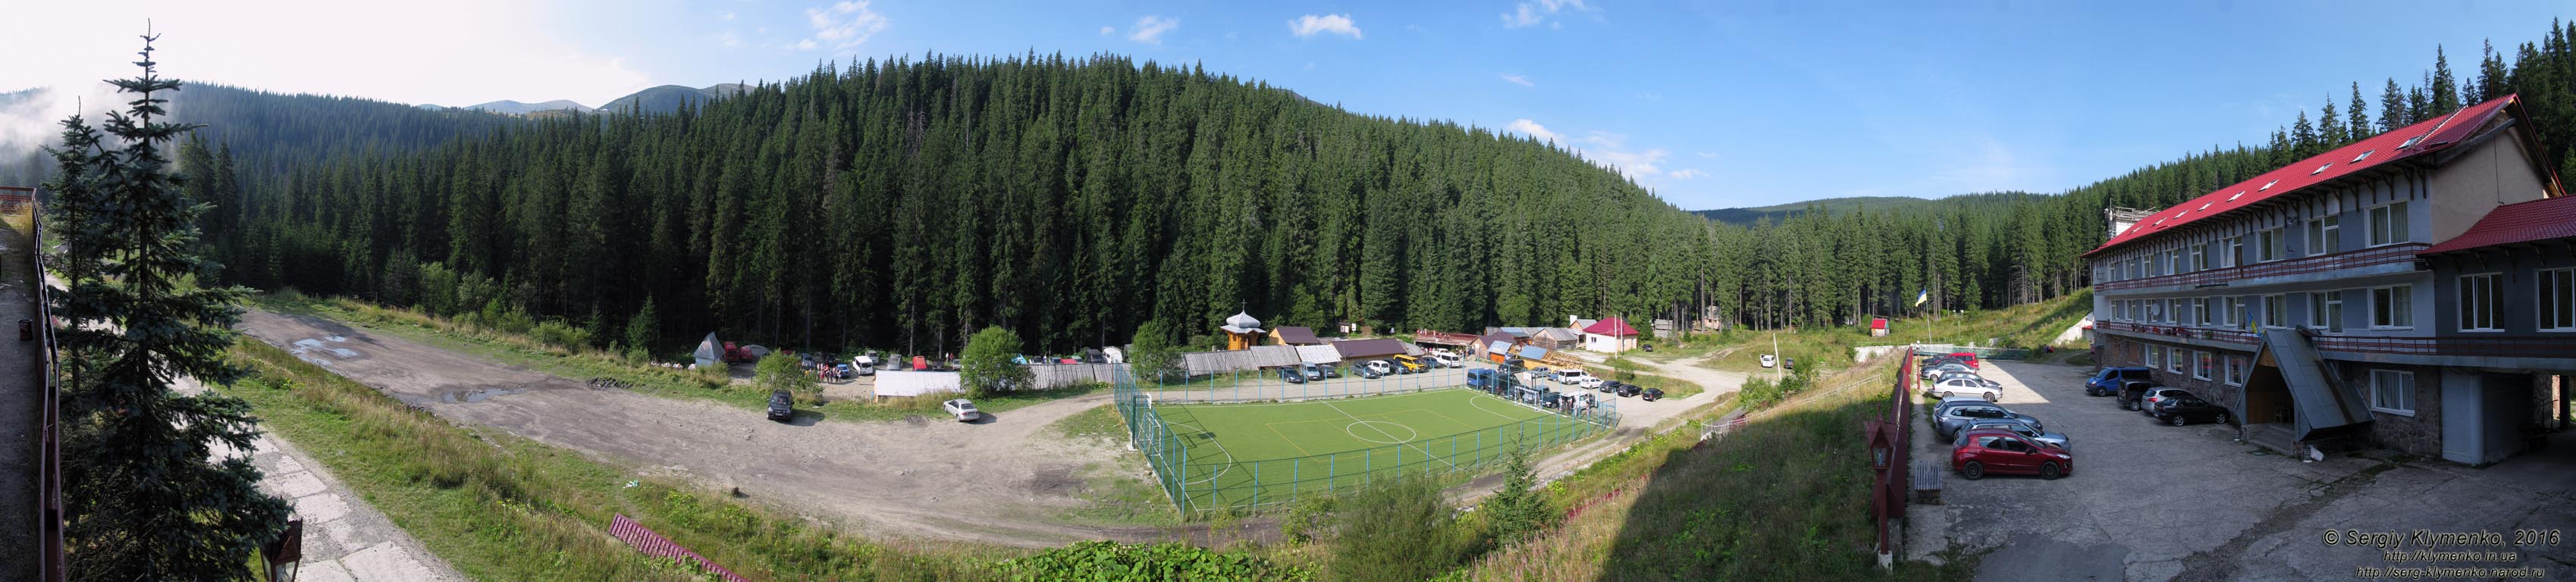 Фото Карпат. Ворохтянская высокогорная учебно-спортивная база «Заросляк». Панорама (~270°) территории базы и окружающих гор.